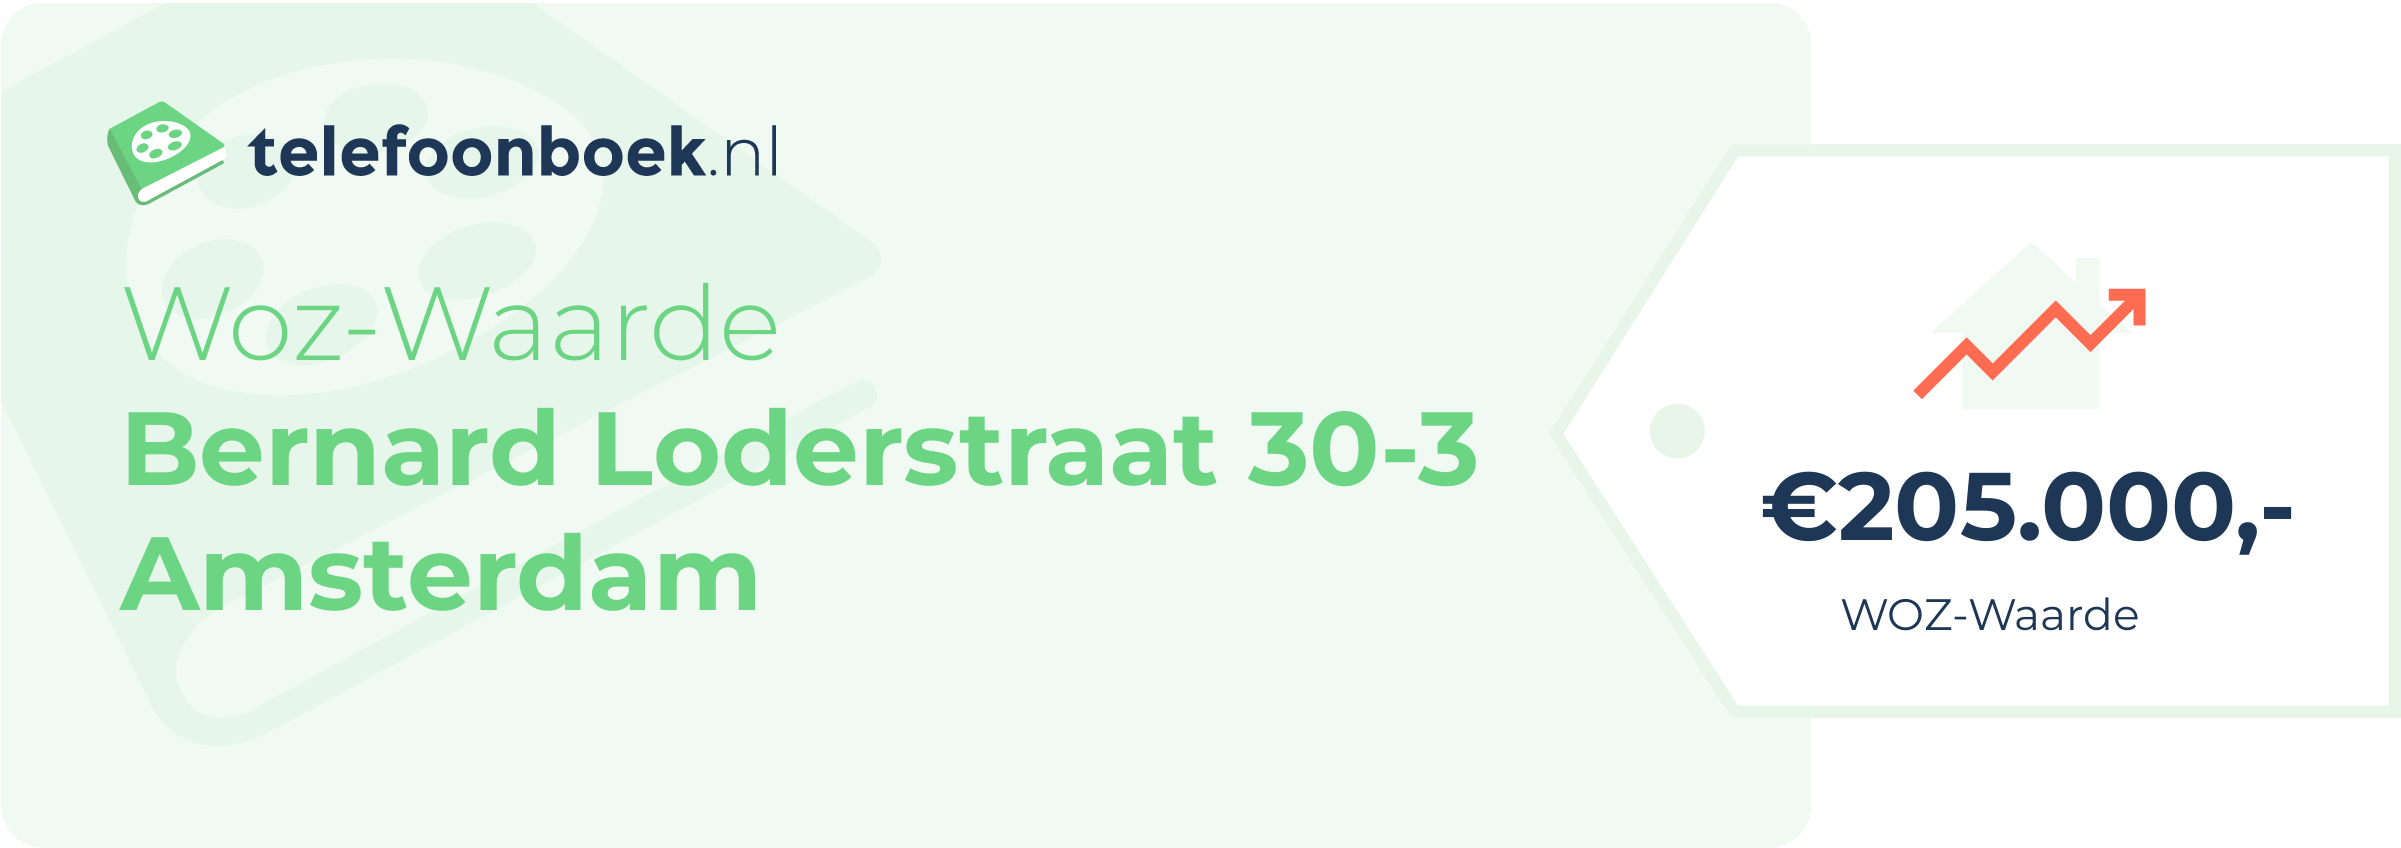 WOZ-waarde Bernard Loderstraat 30-3 Amsterdam